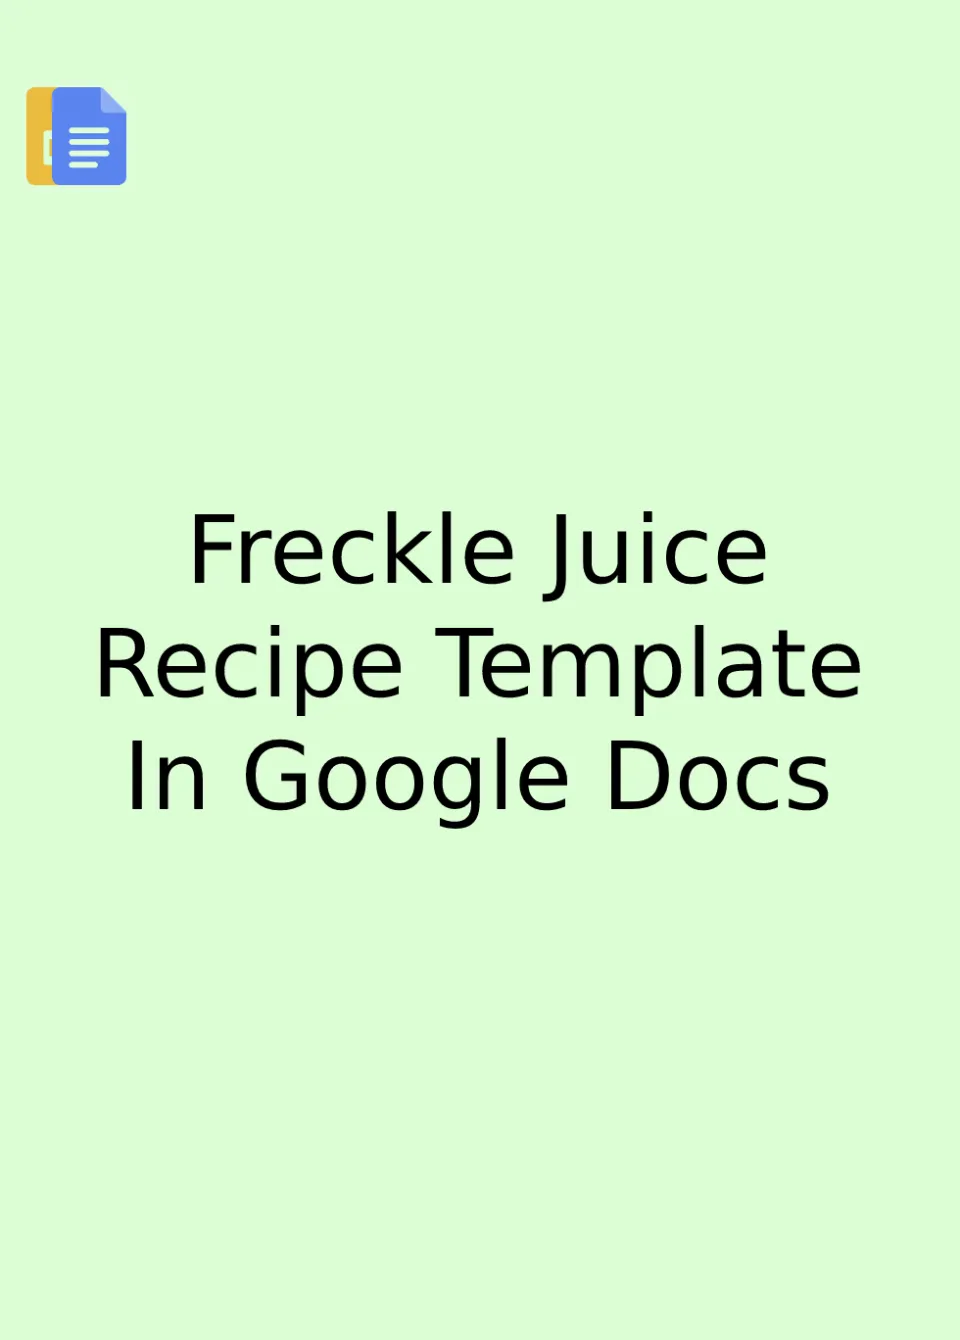 Freckle Juice Recipe Template Google Docs